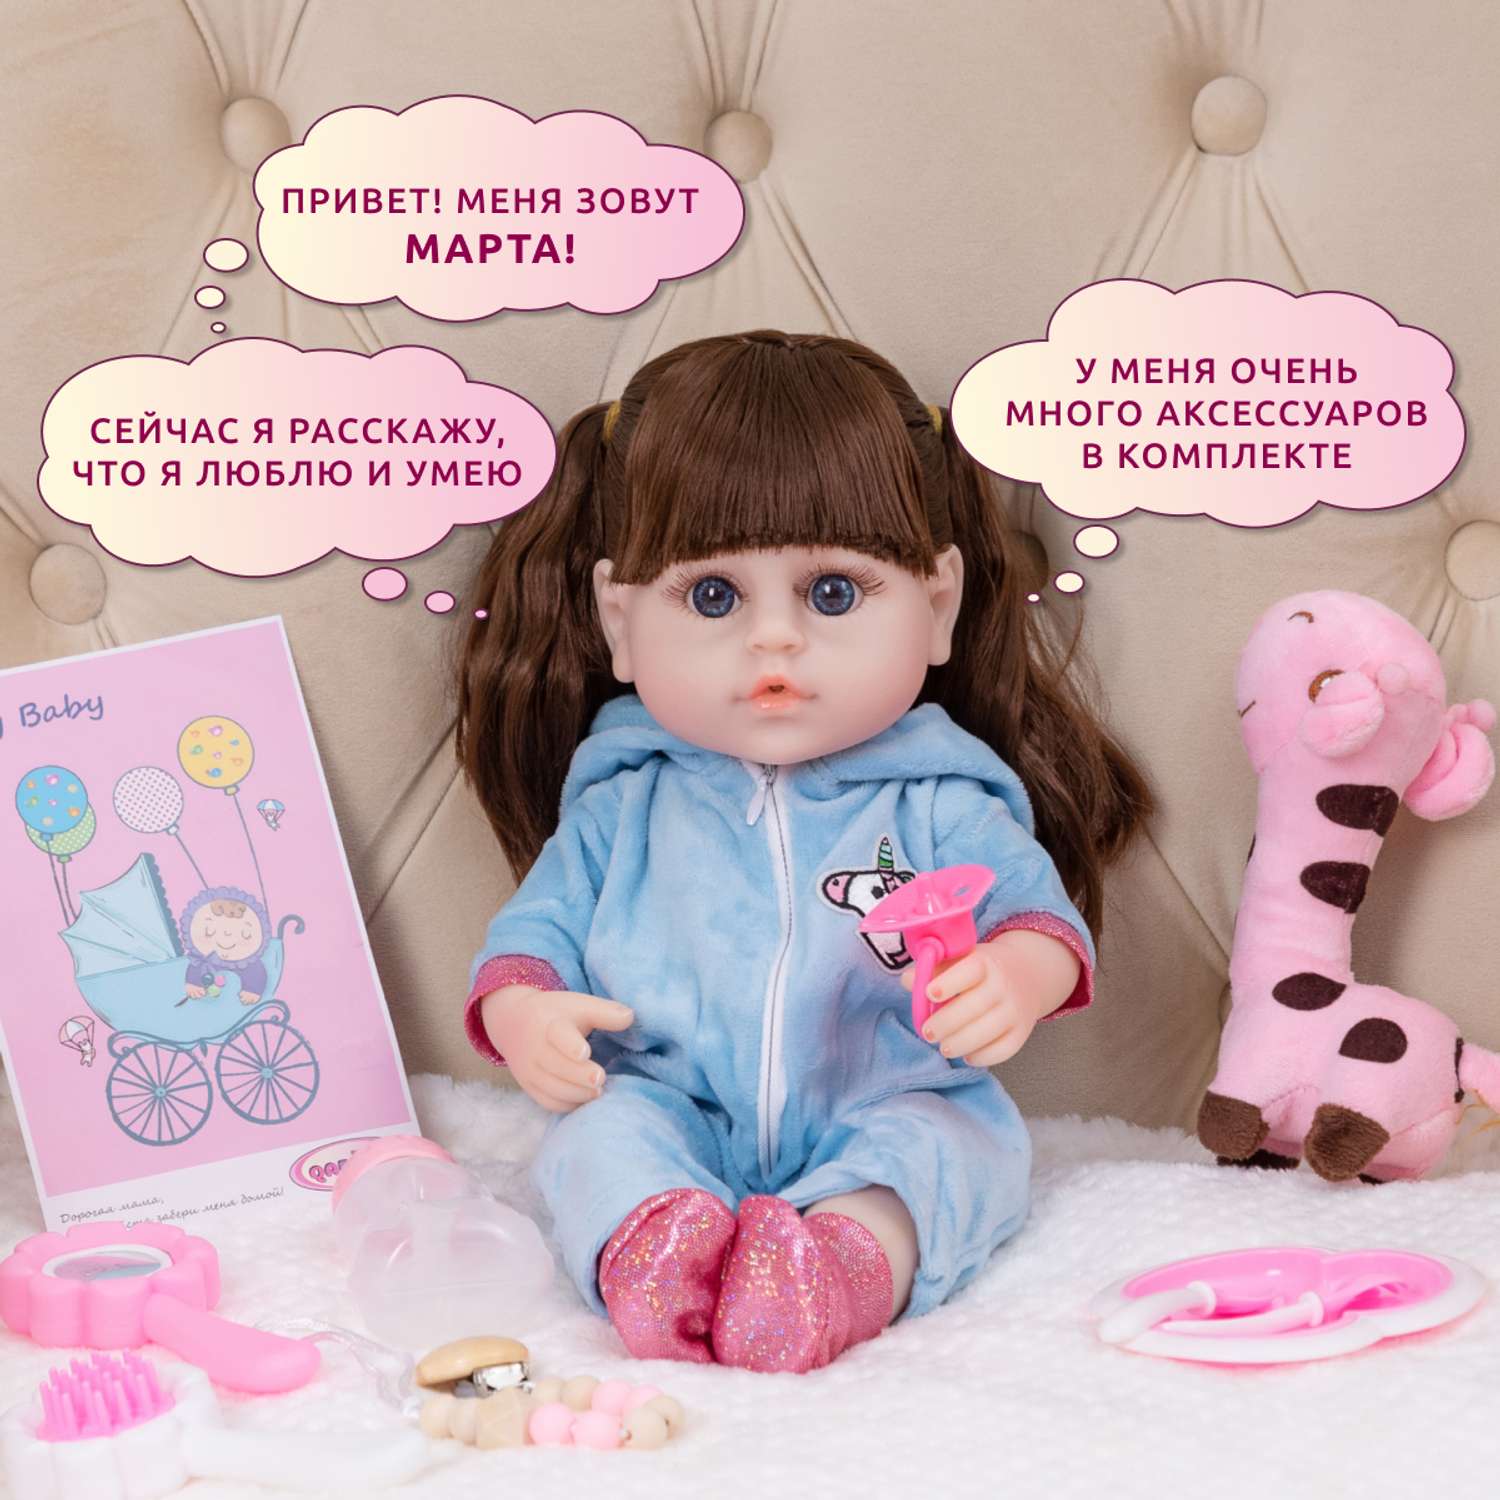 Кукла Реборн QA BABY Марта девочка интерактивная Пупс набор игрушки для ванной для девочки 38 см 3806 - фото 2